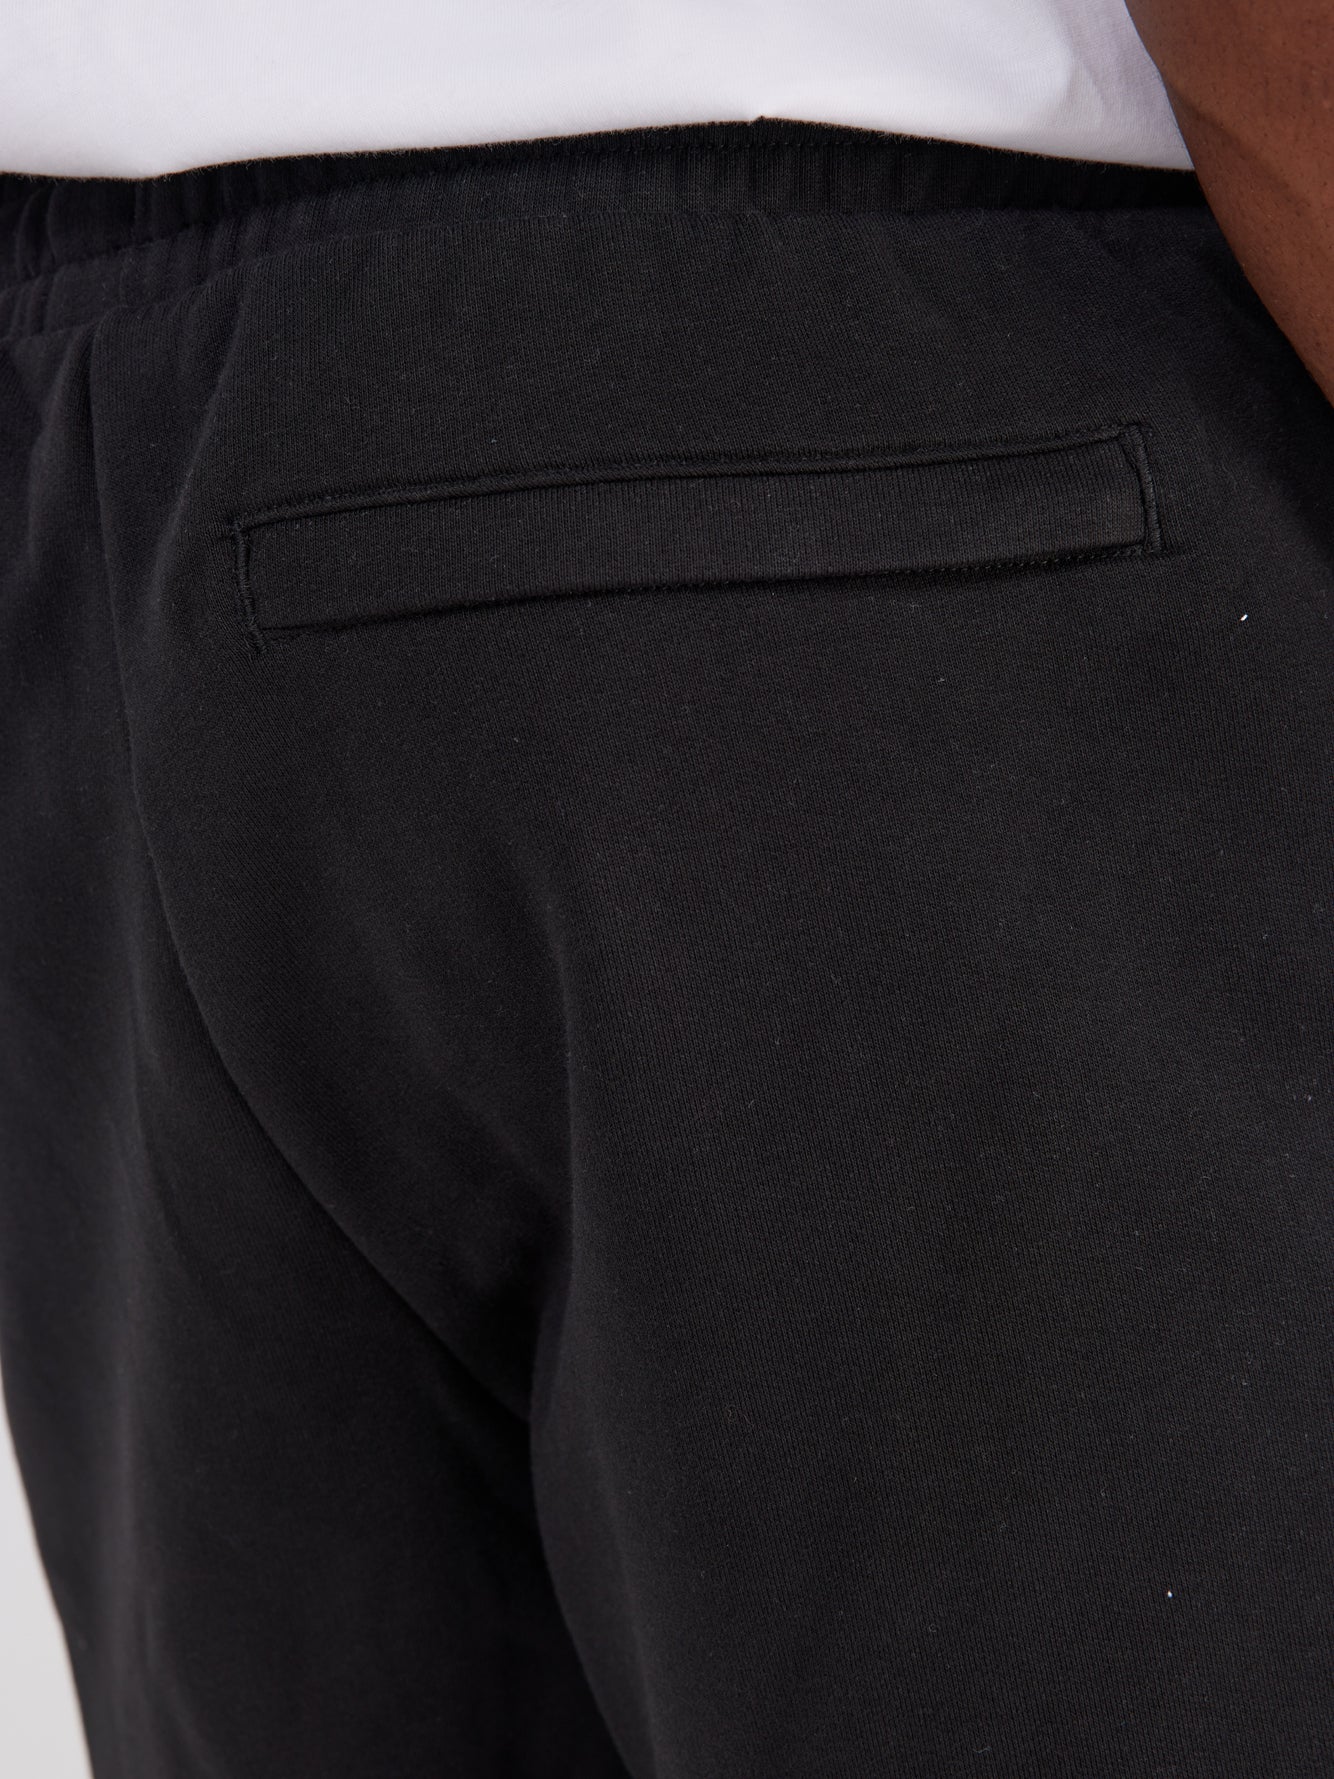 מכנסי ברמודה עם הדפס לוגו גרפי- Puma|פומה